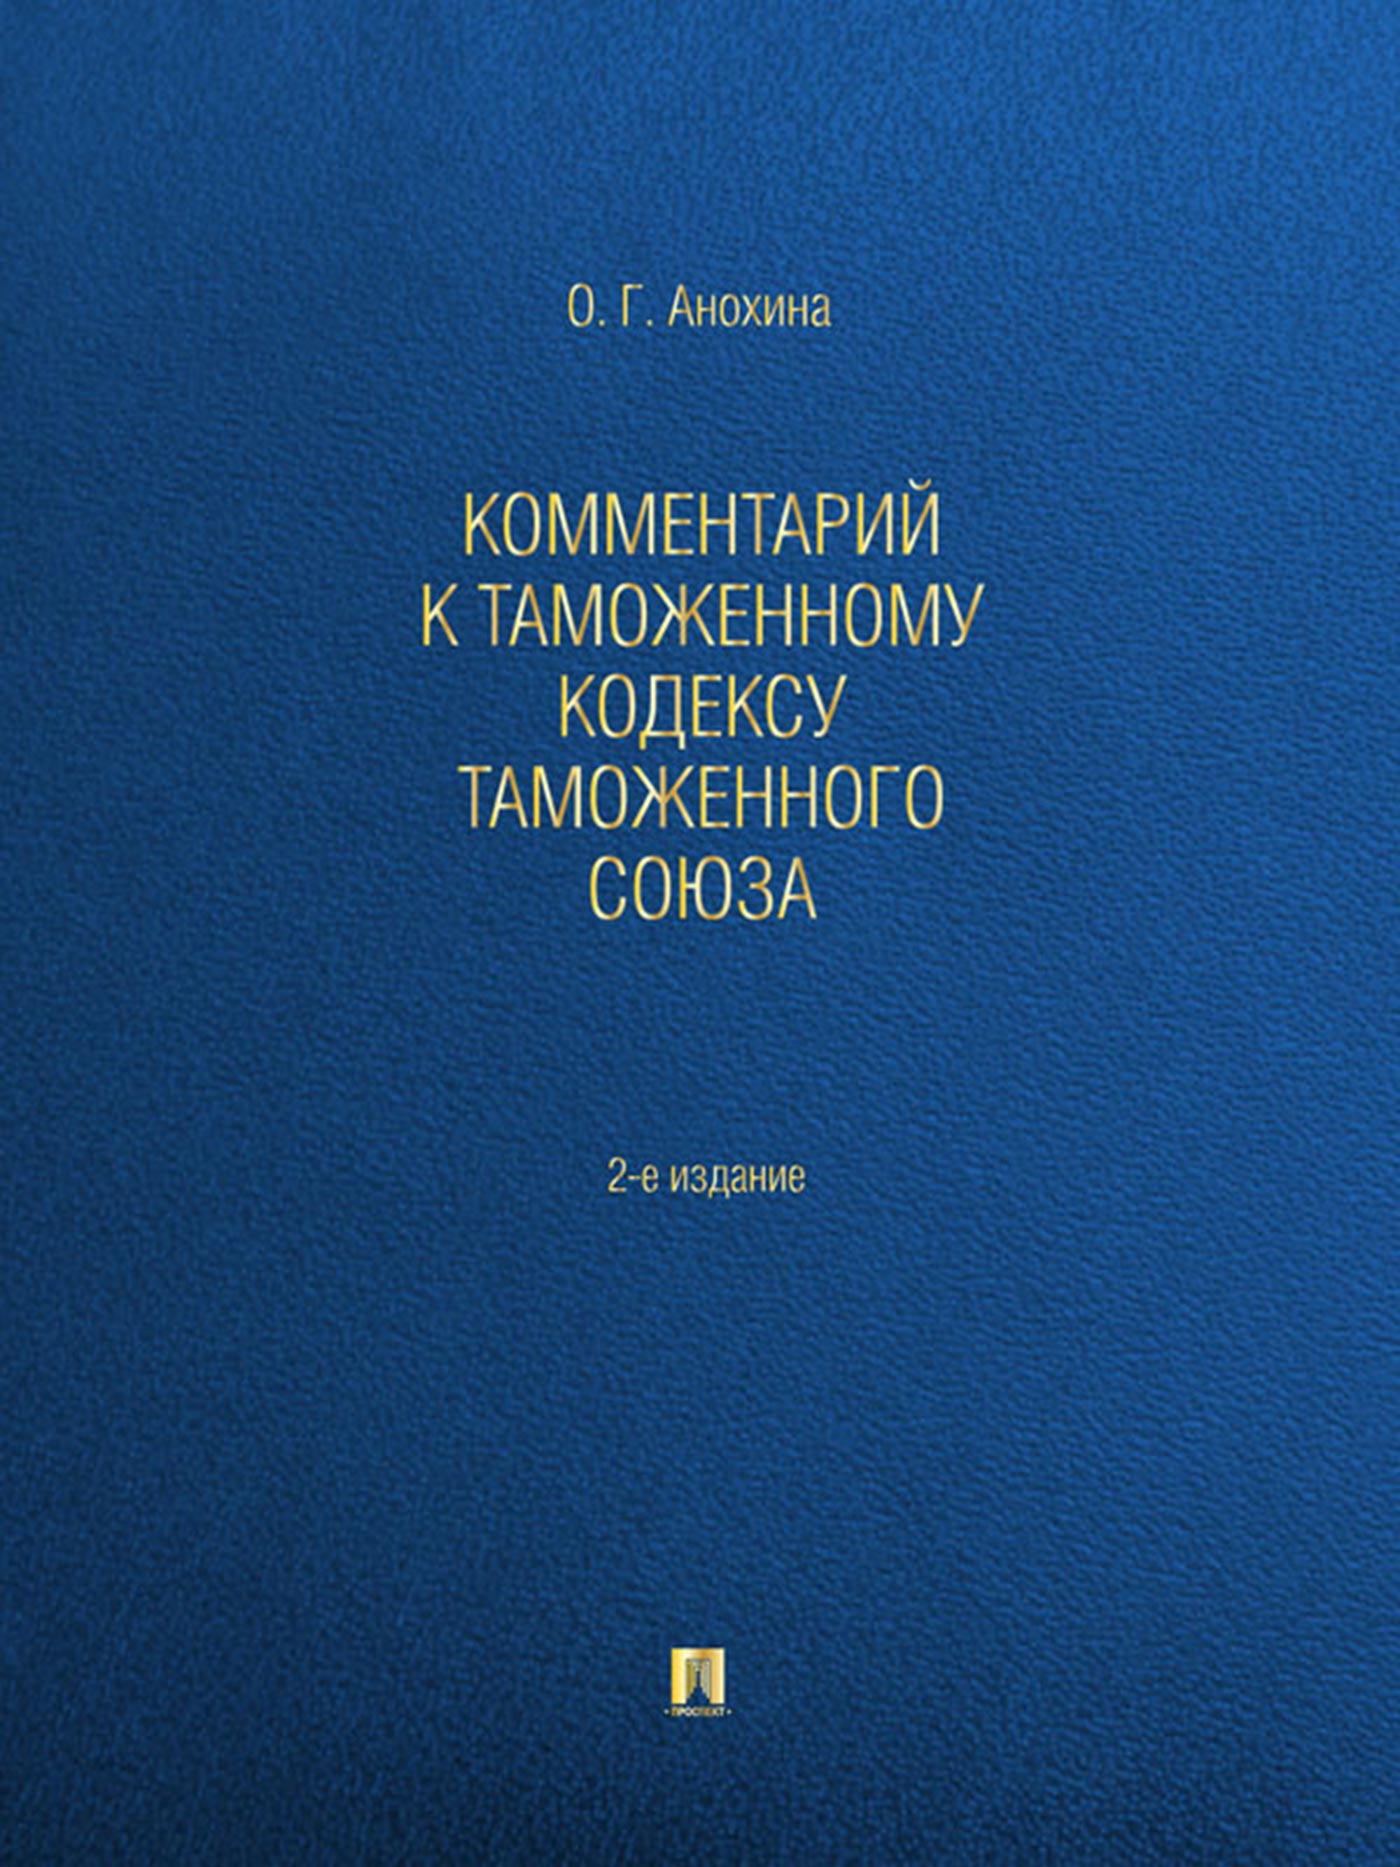 Комментарий к Таможенному кодексу Таможенного союза. 2-е издание